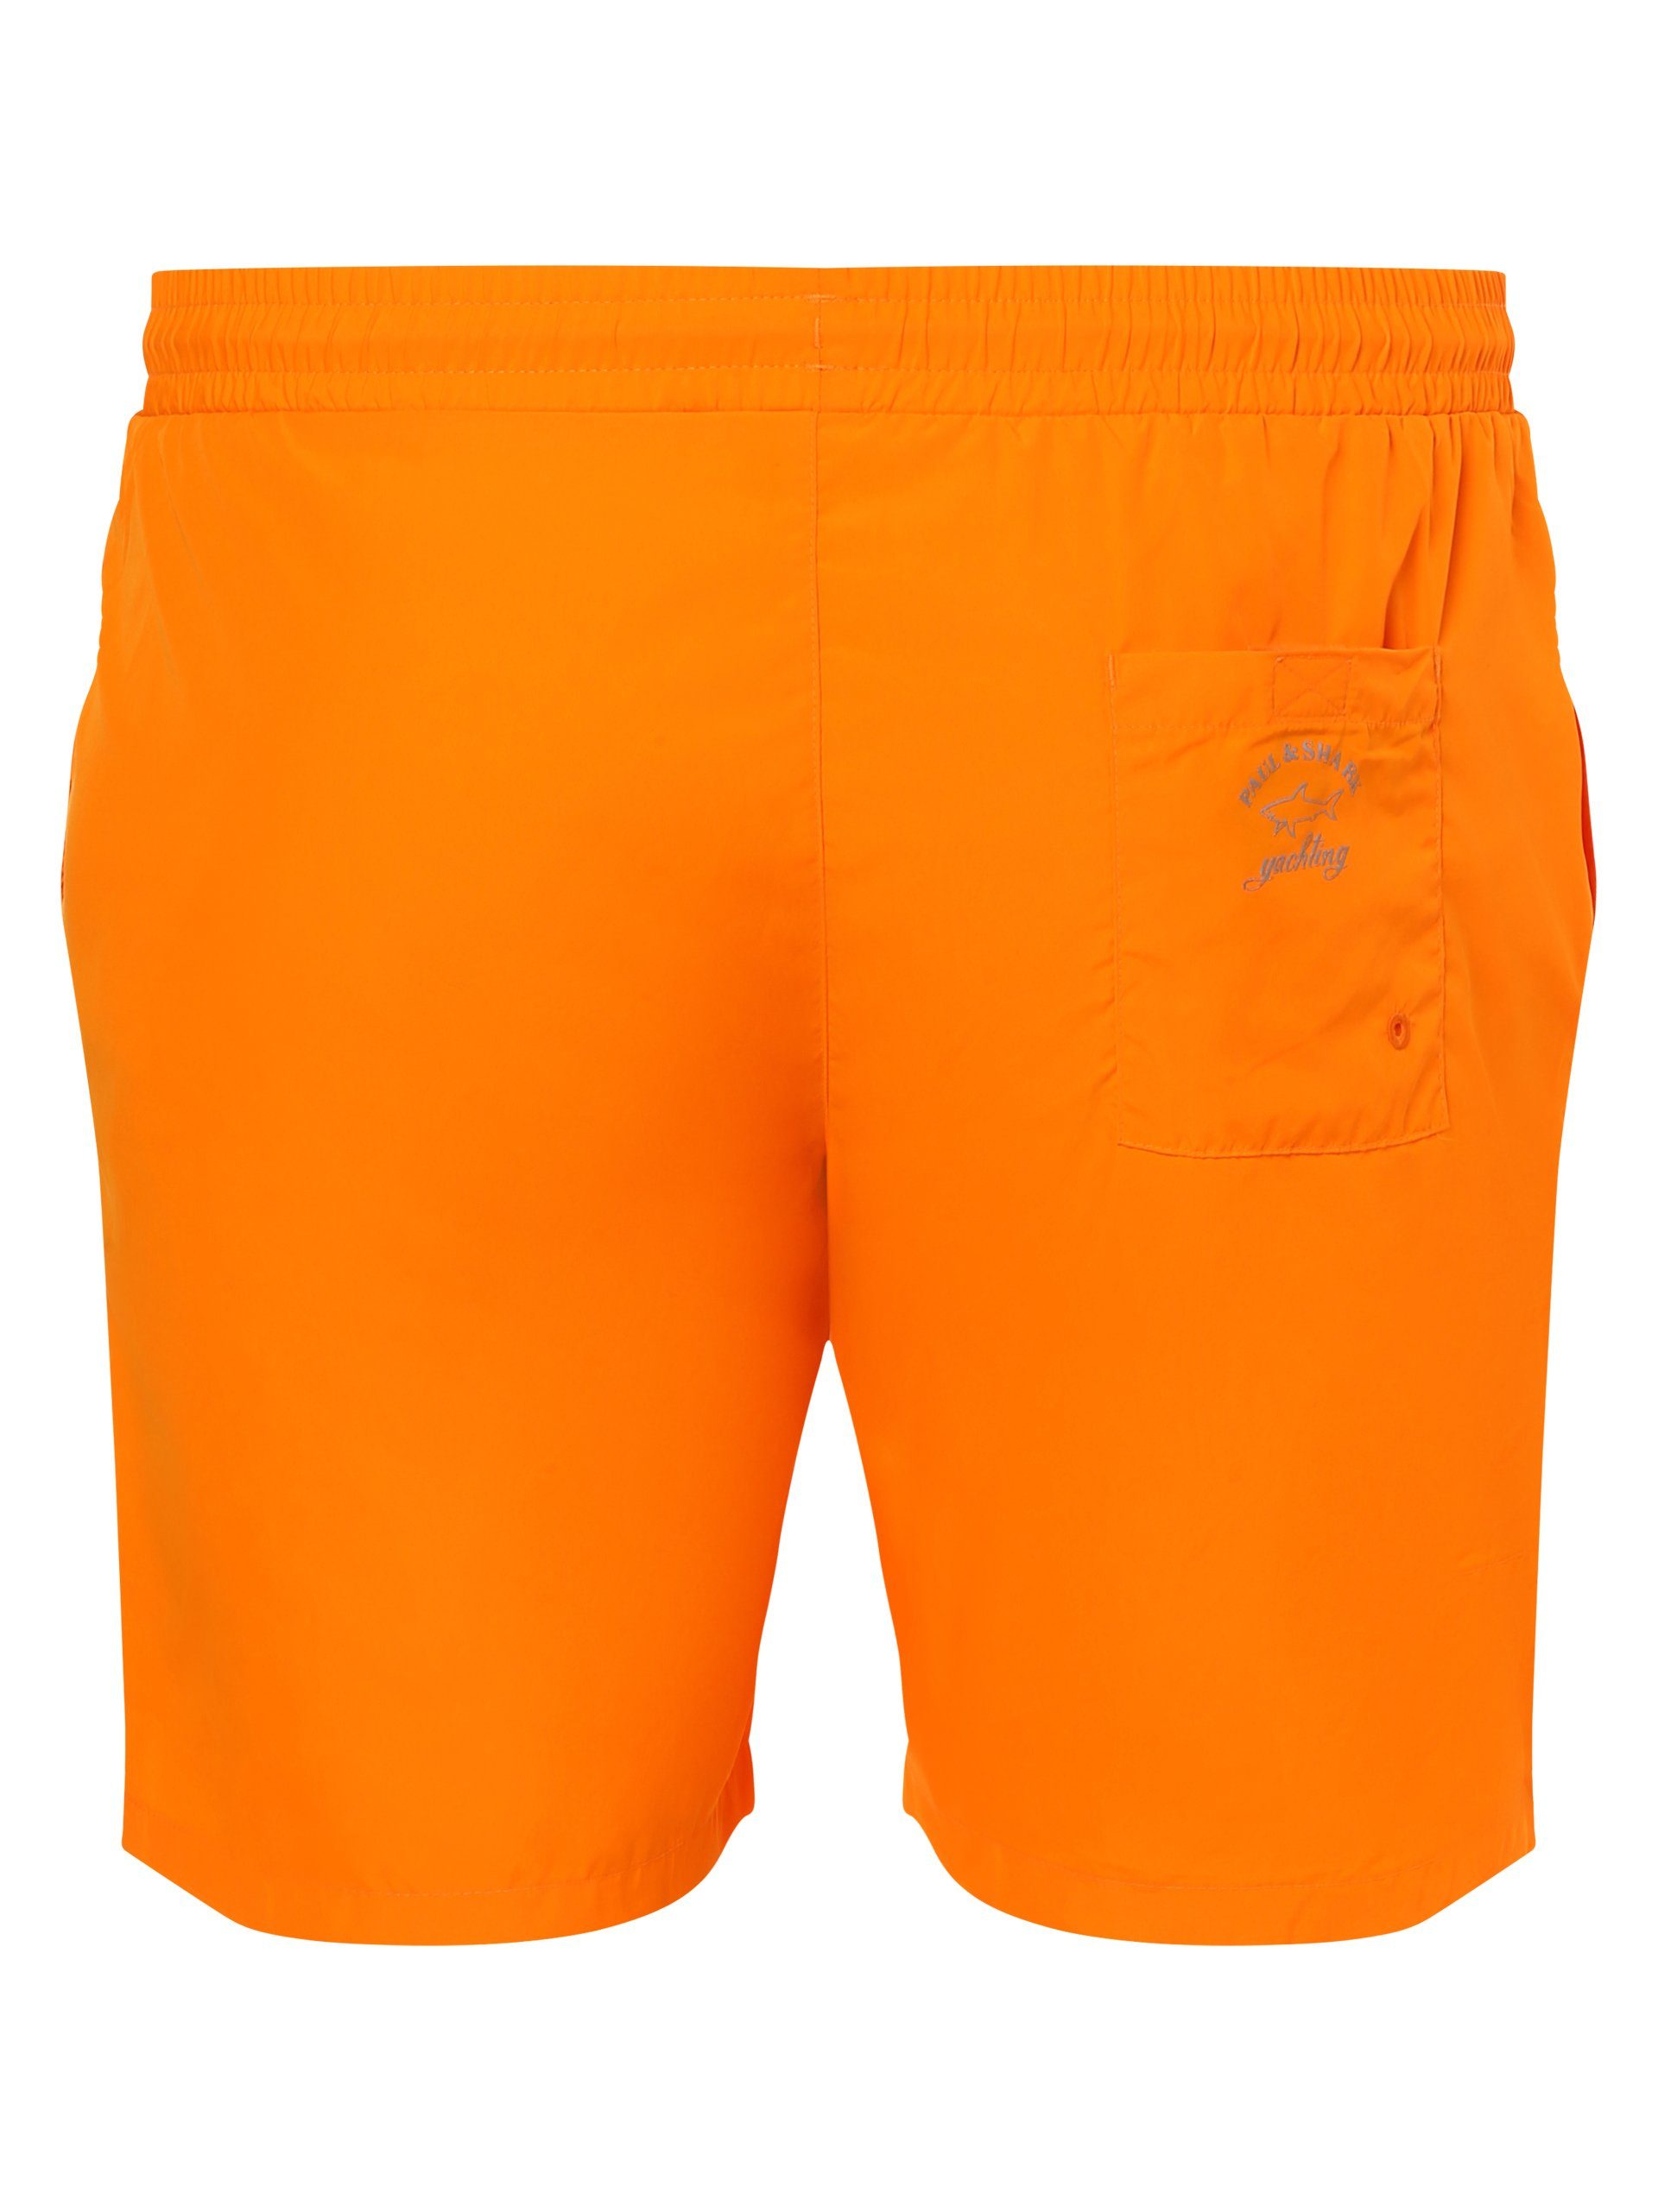 PAUL Badeshorts SHARK & orange